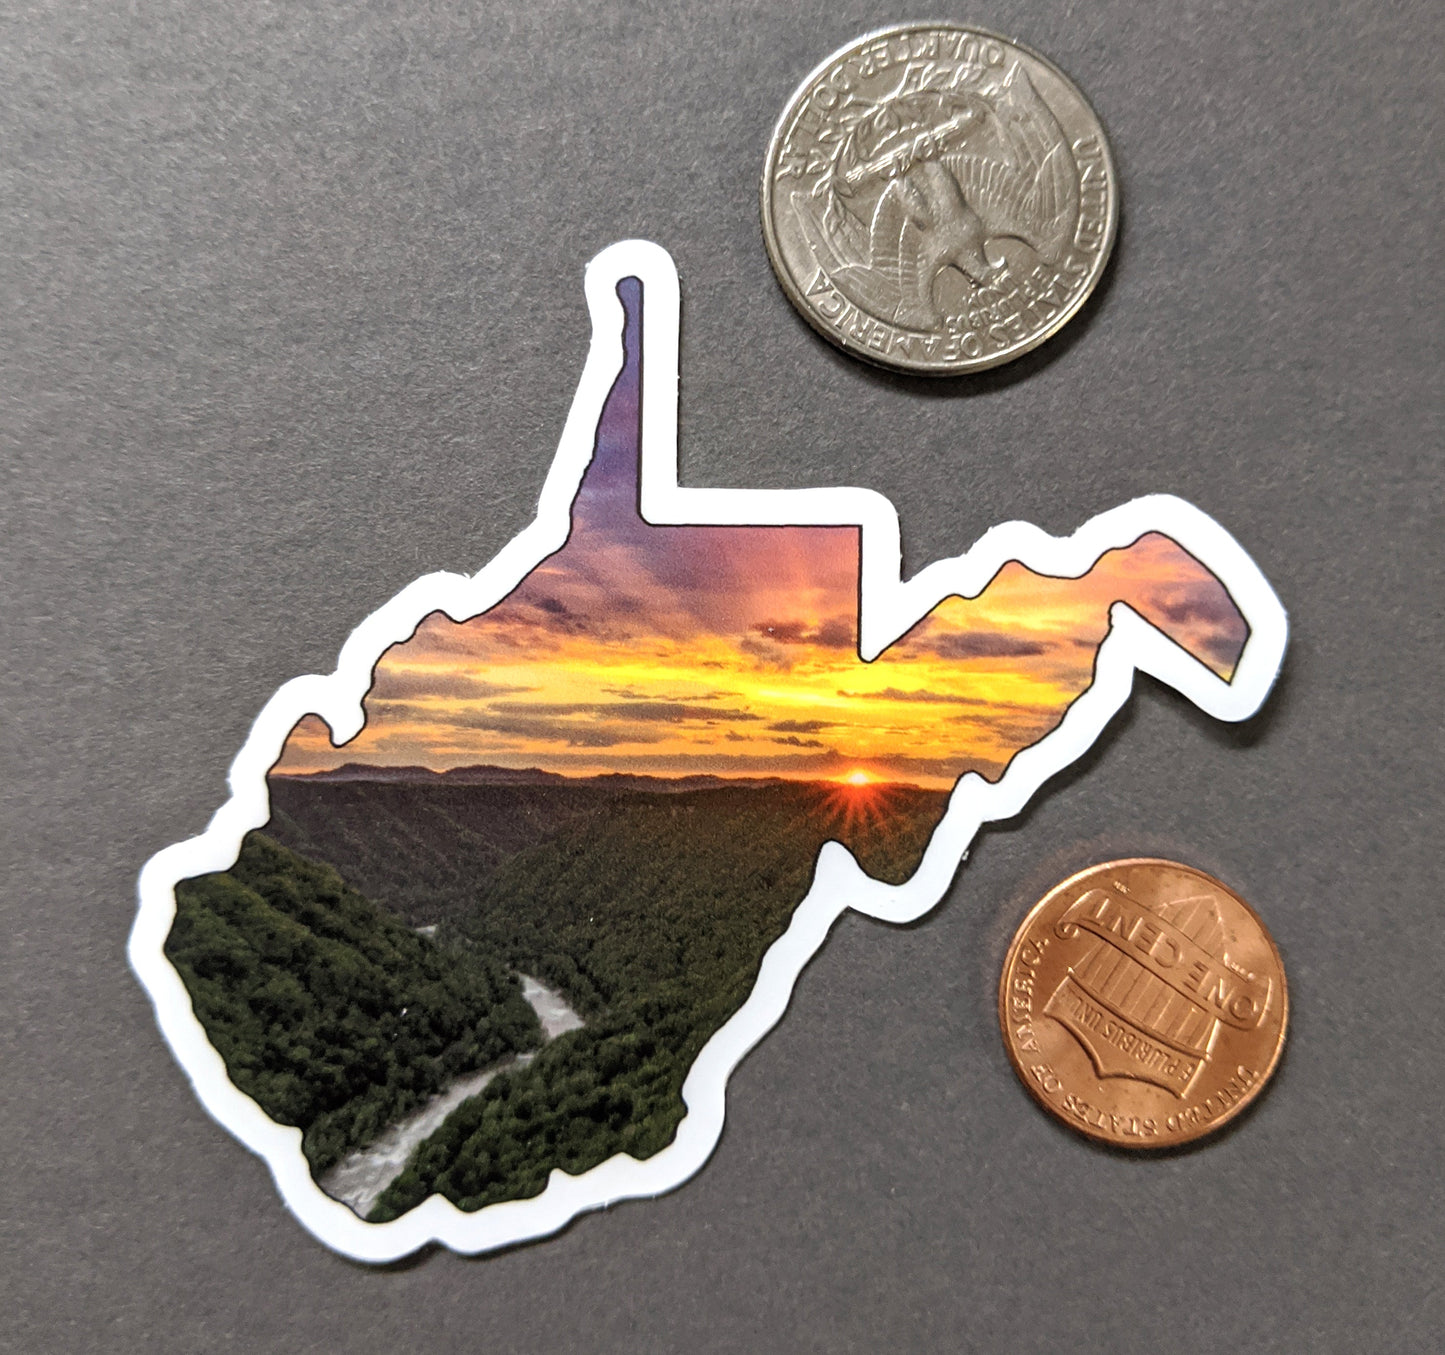 West Virginia New River Gorge Sticker - Vinyl Sticker - Sunset - Mountains